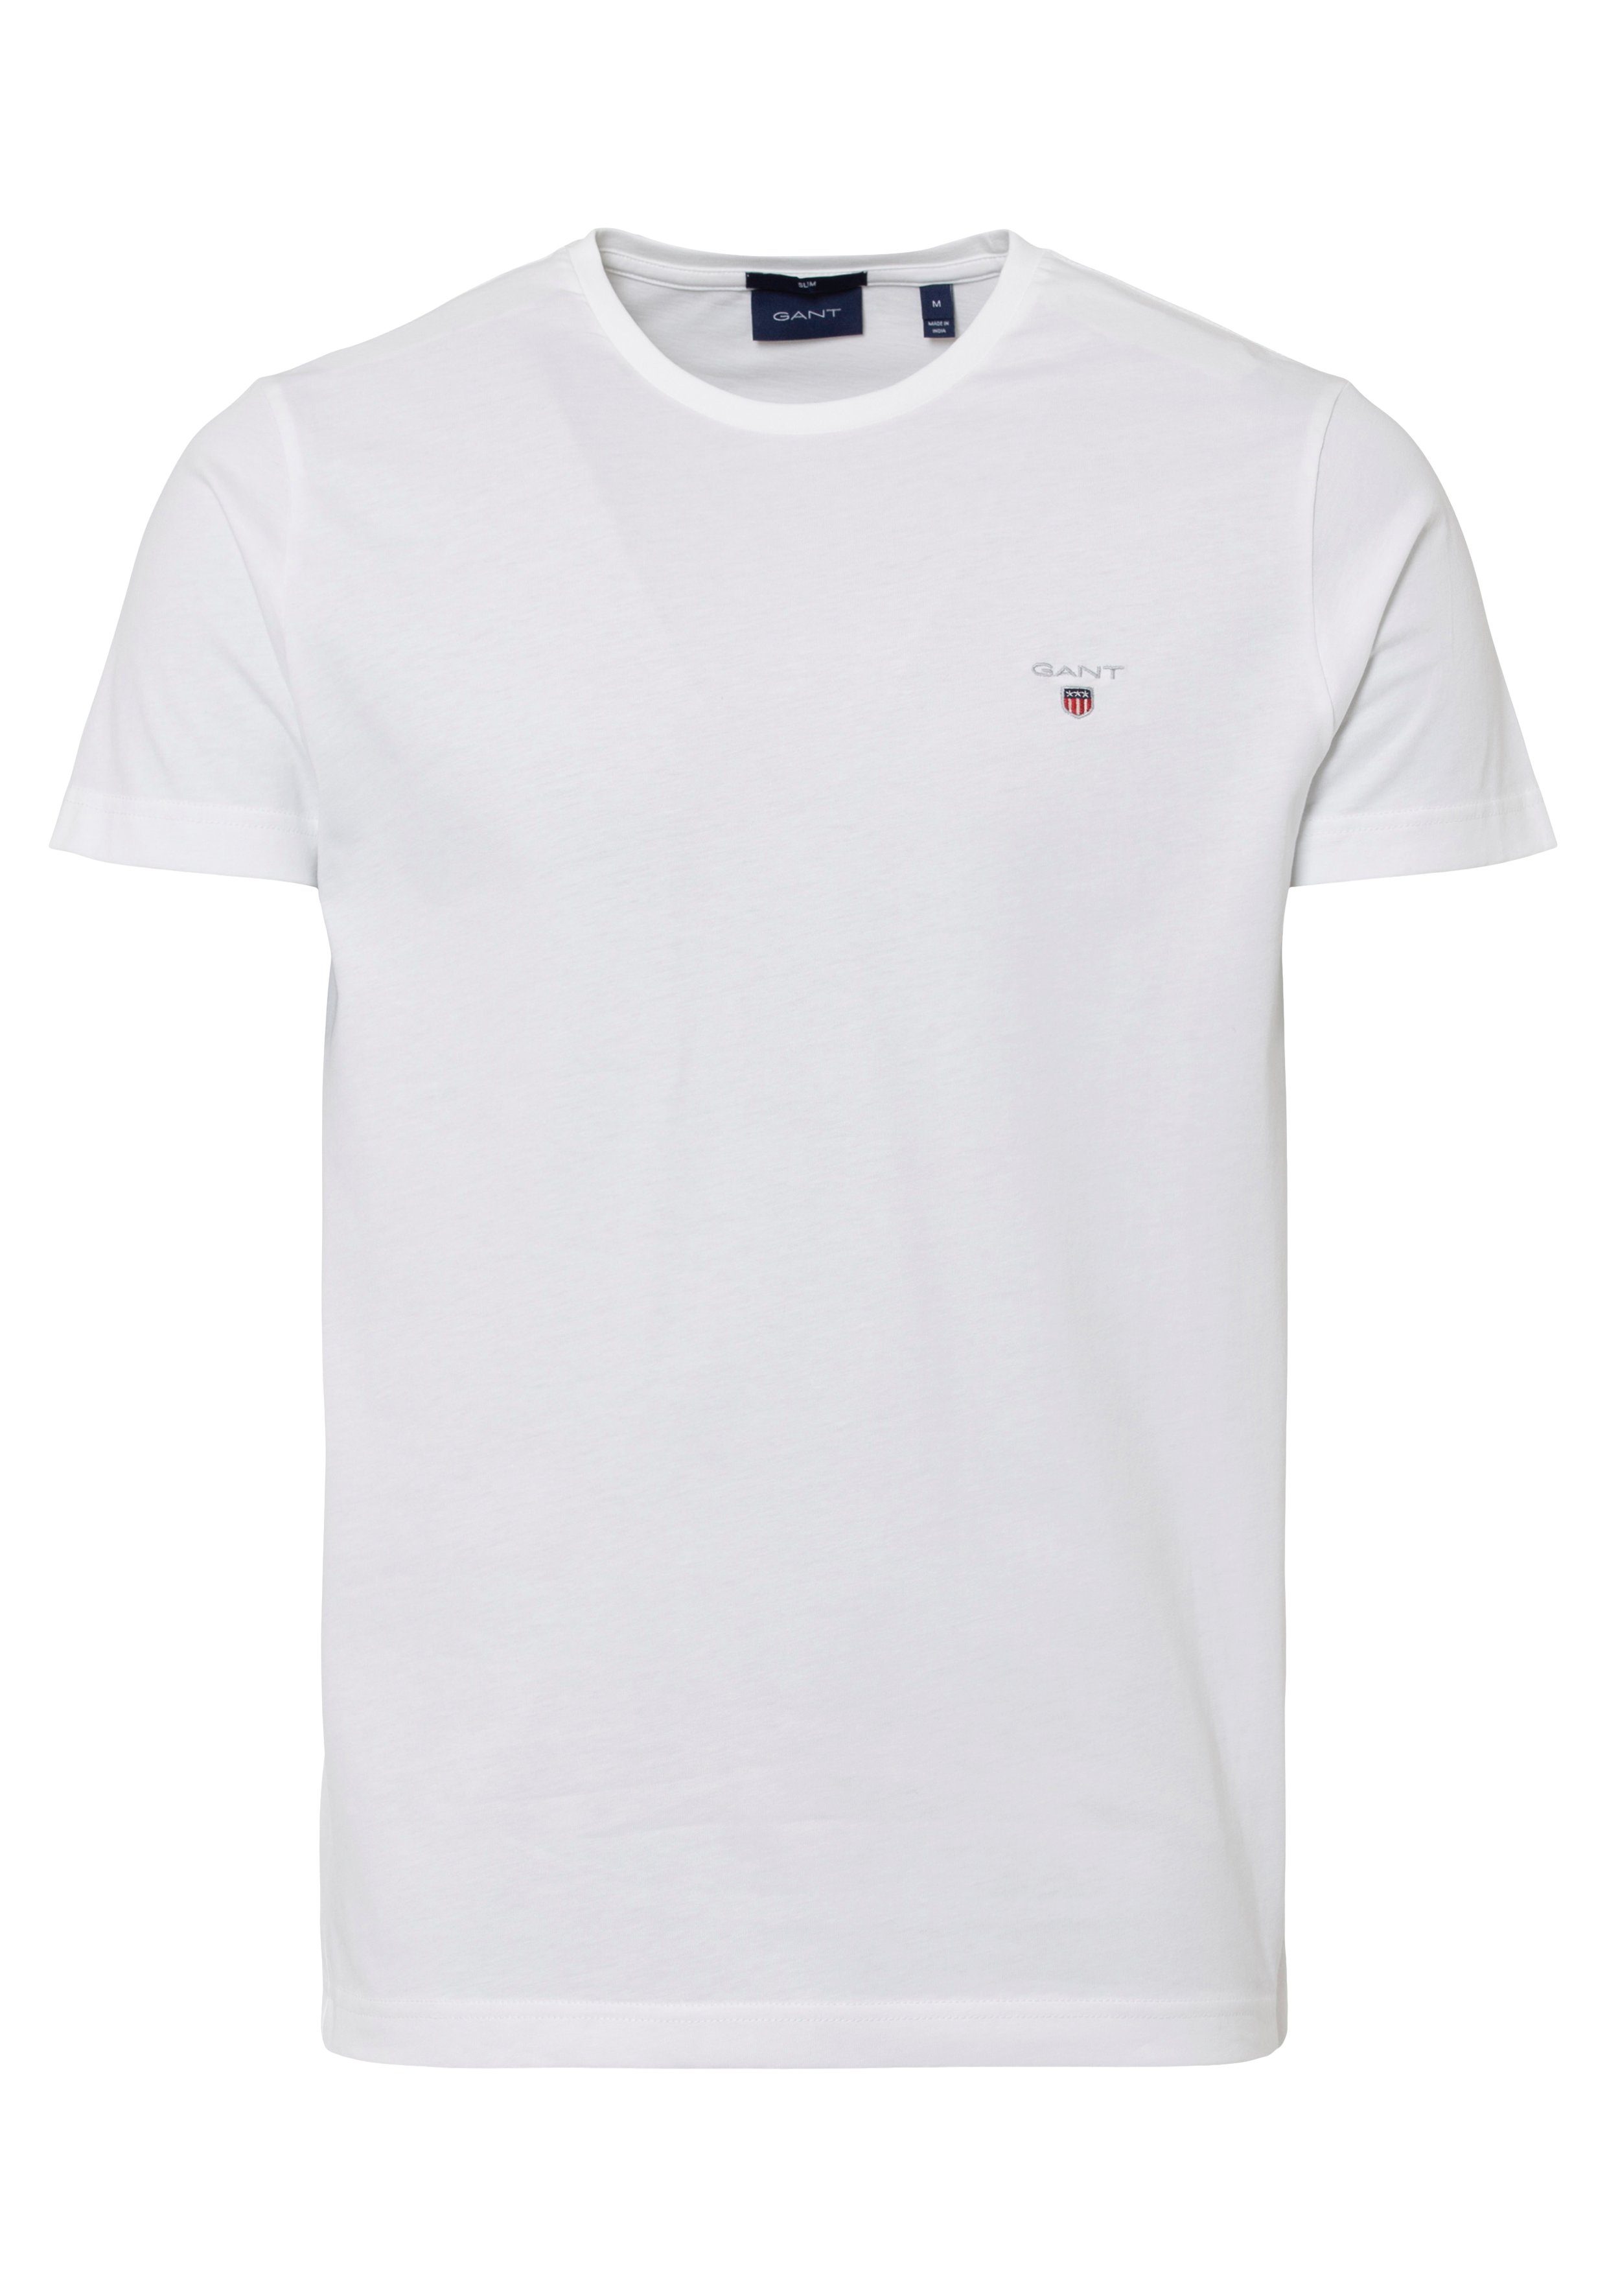 T-SHIRT ORIGINAL Gant T-Shirt SLIM